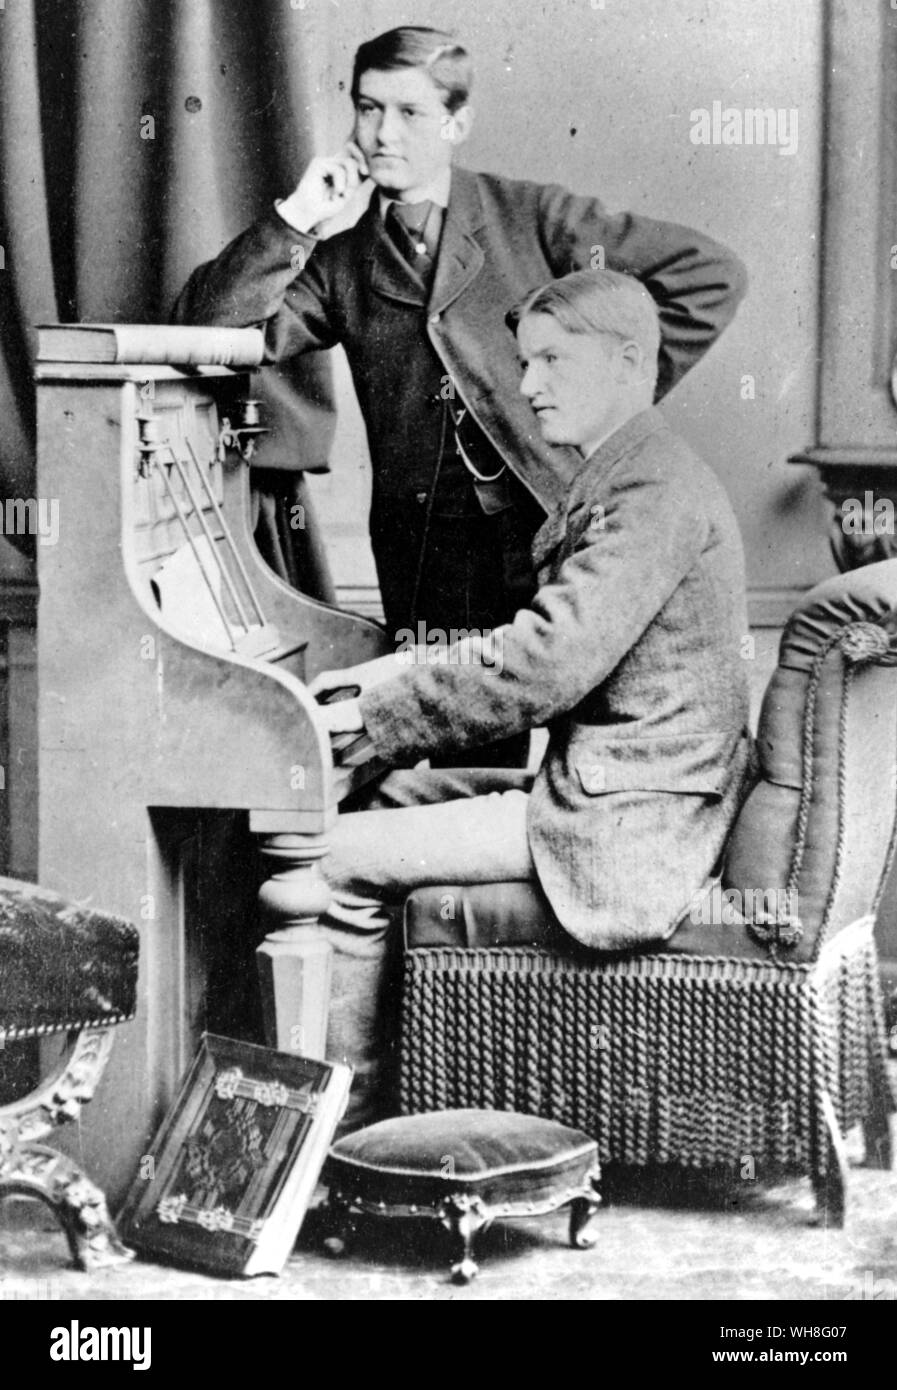 George Bernard Shaw am Klavier mit Robert Moore Fishbourne, 1876. George Bernard Shaw (1856-1950) war ein irischer Dramatiker und Nobelpreisträger für Literatur im Jahre 1925. Der Genius der Shaw Seite 28. Stockfoto